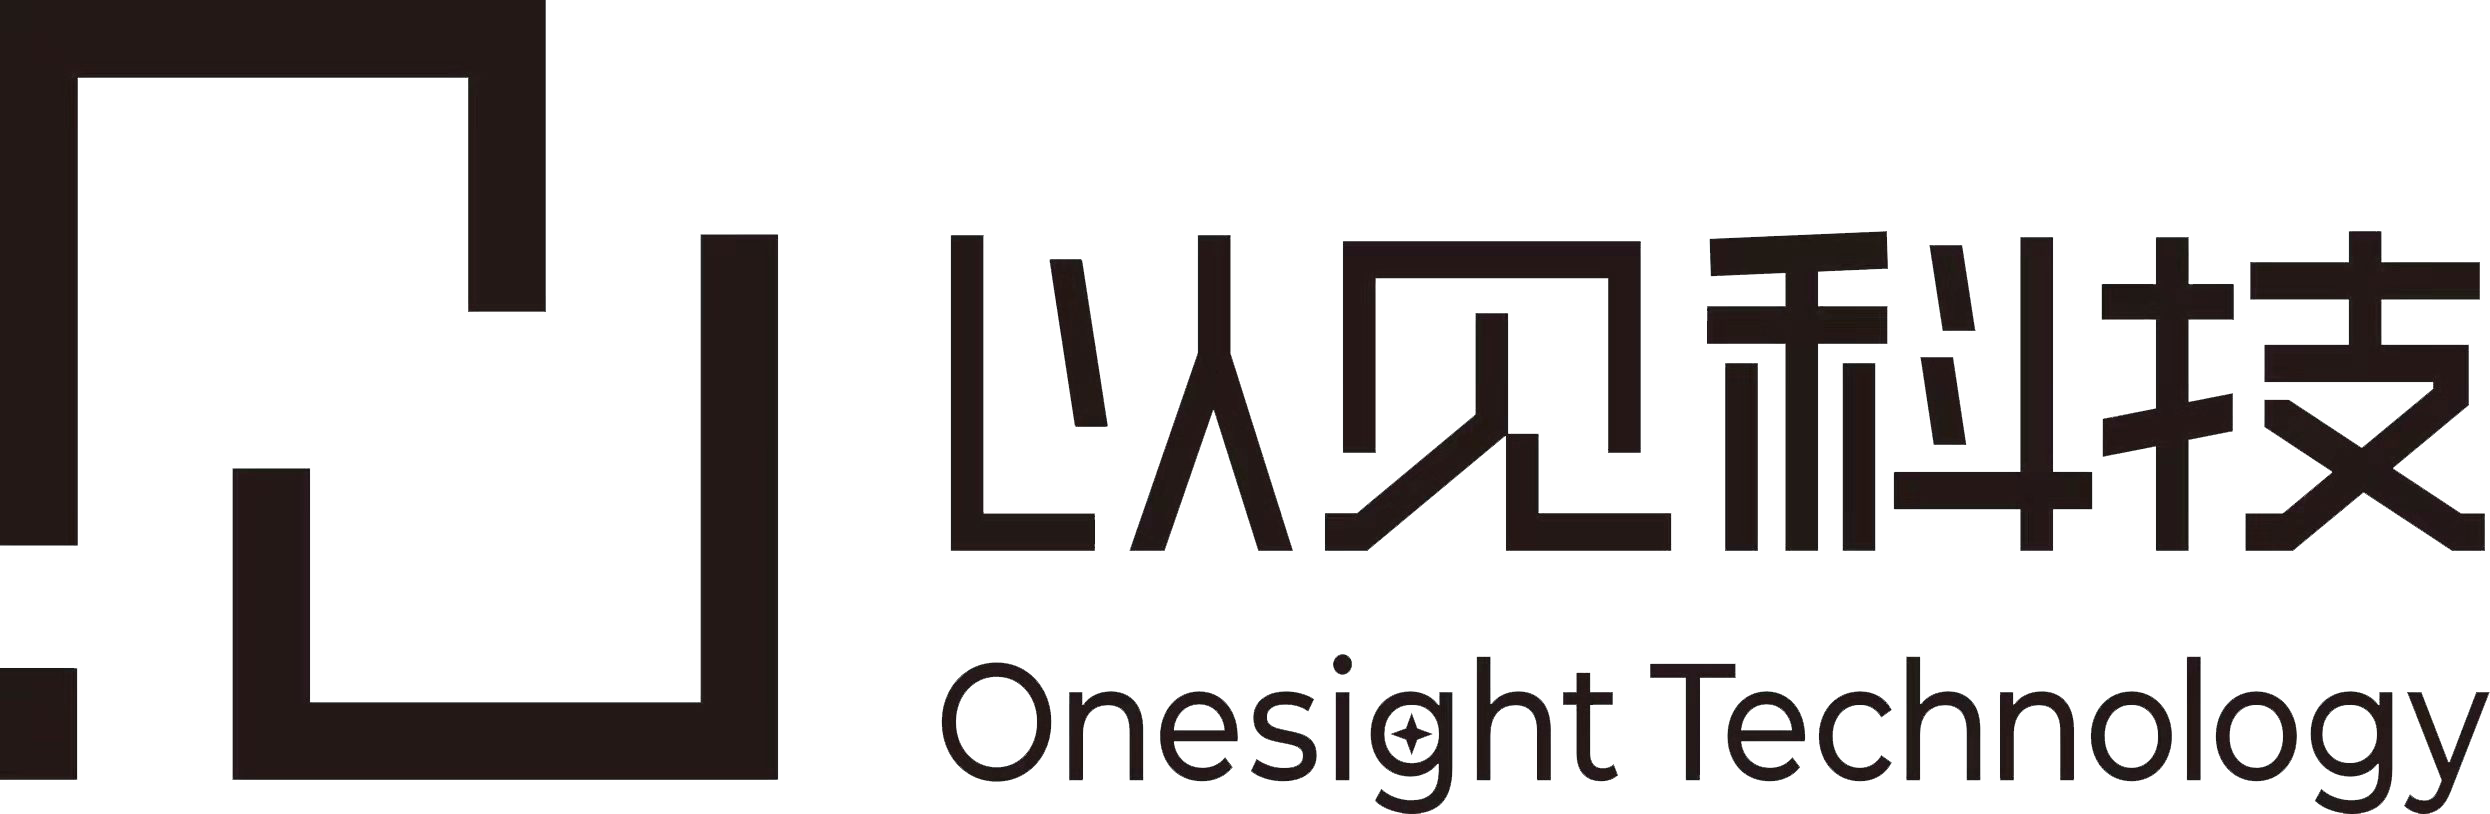 OneSight